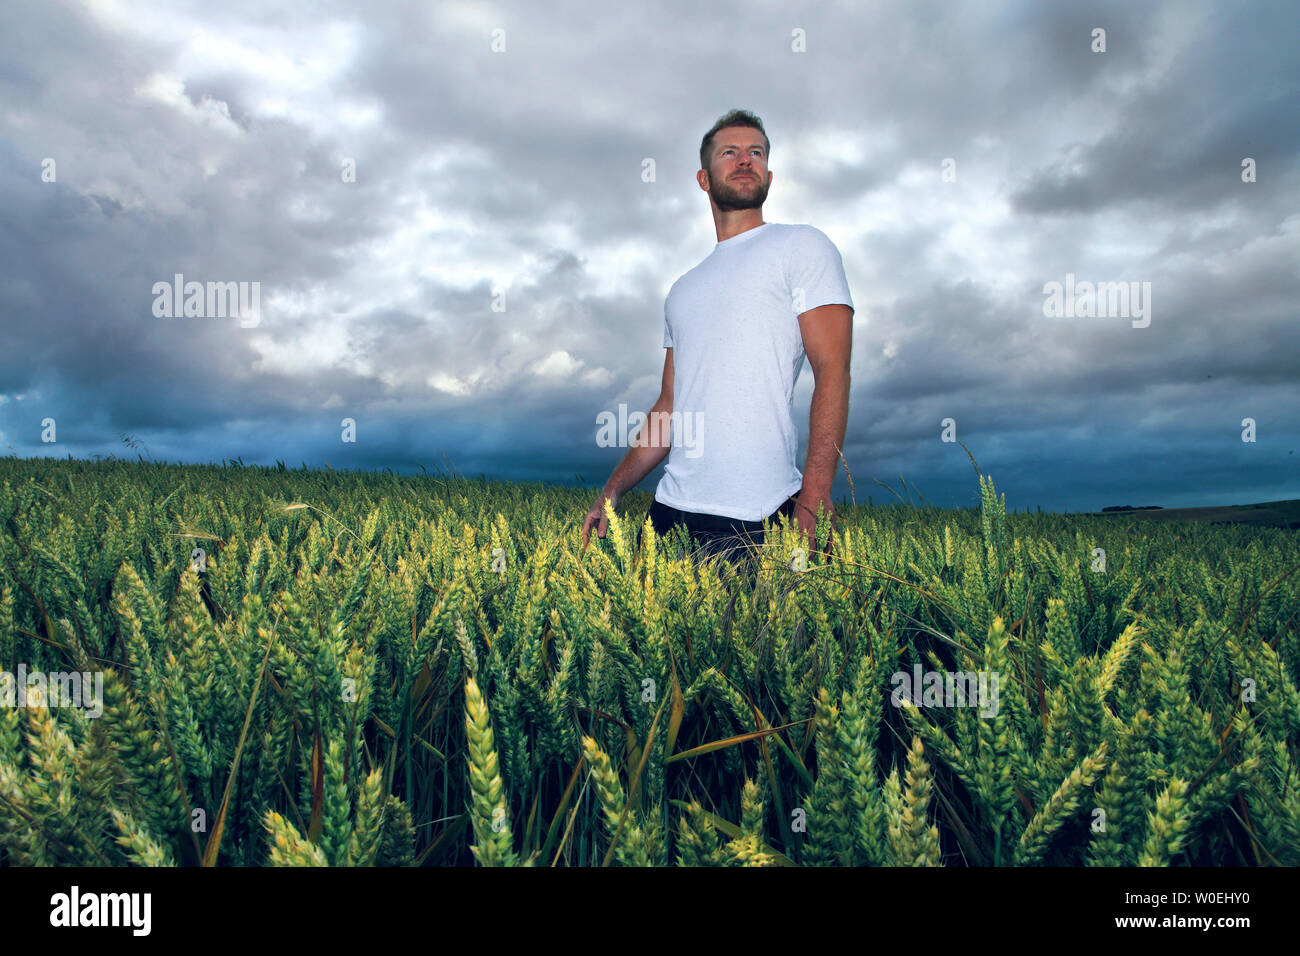 Jeune homme dans un champ de blé Banque D'Images